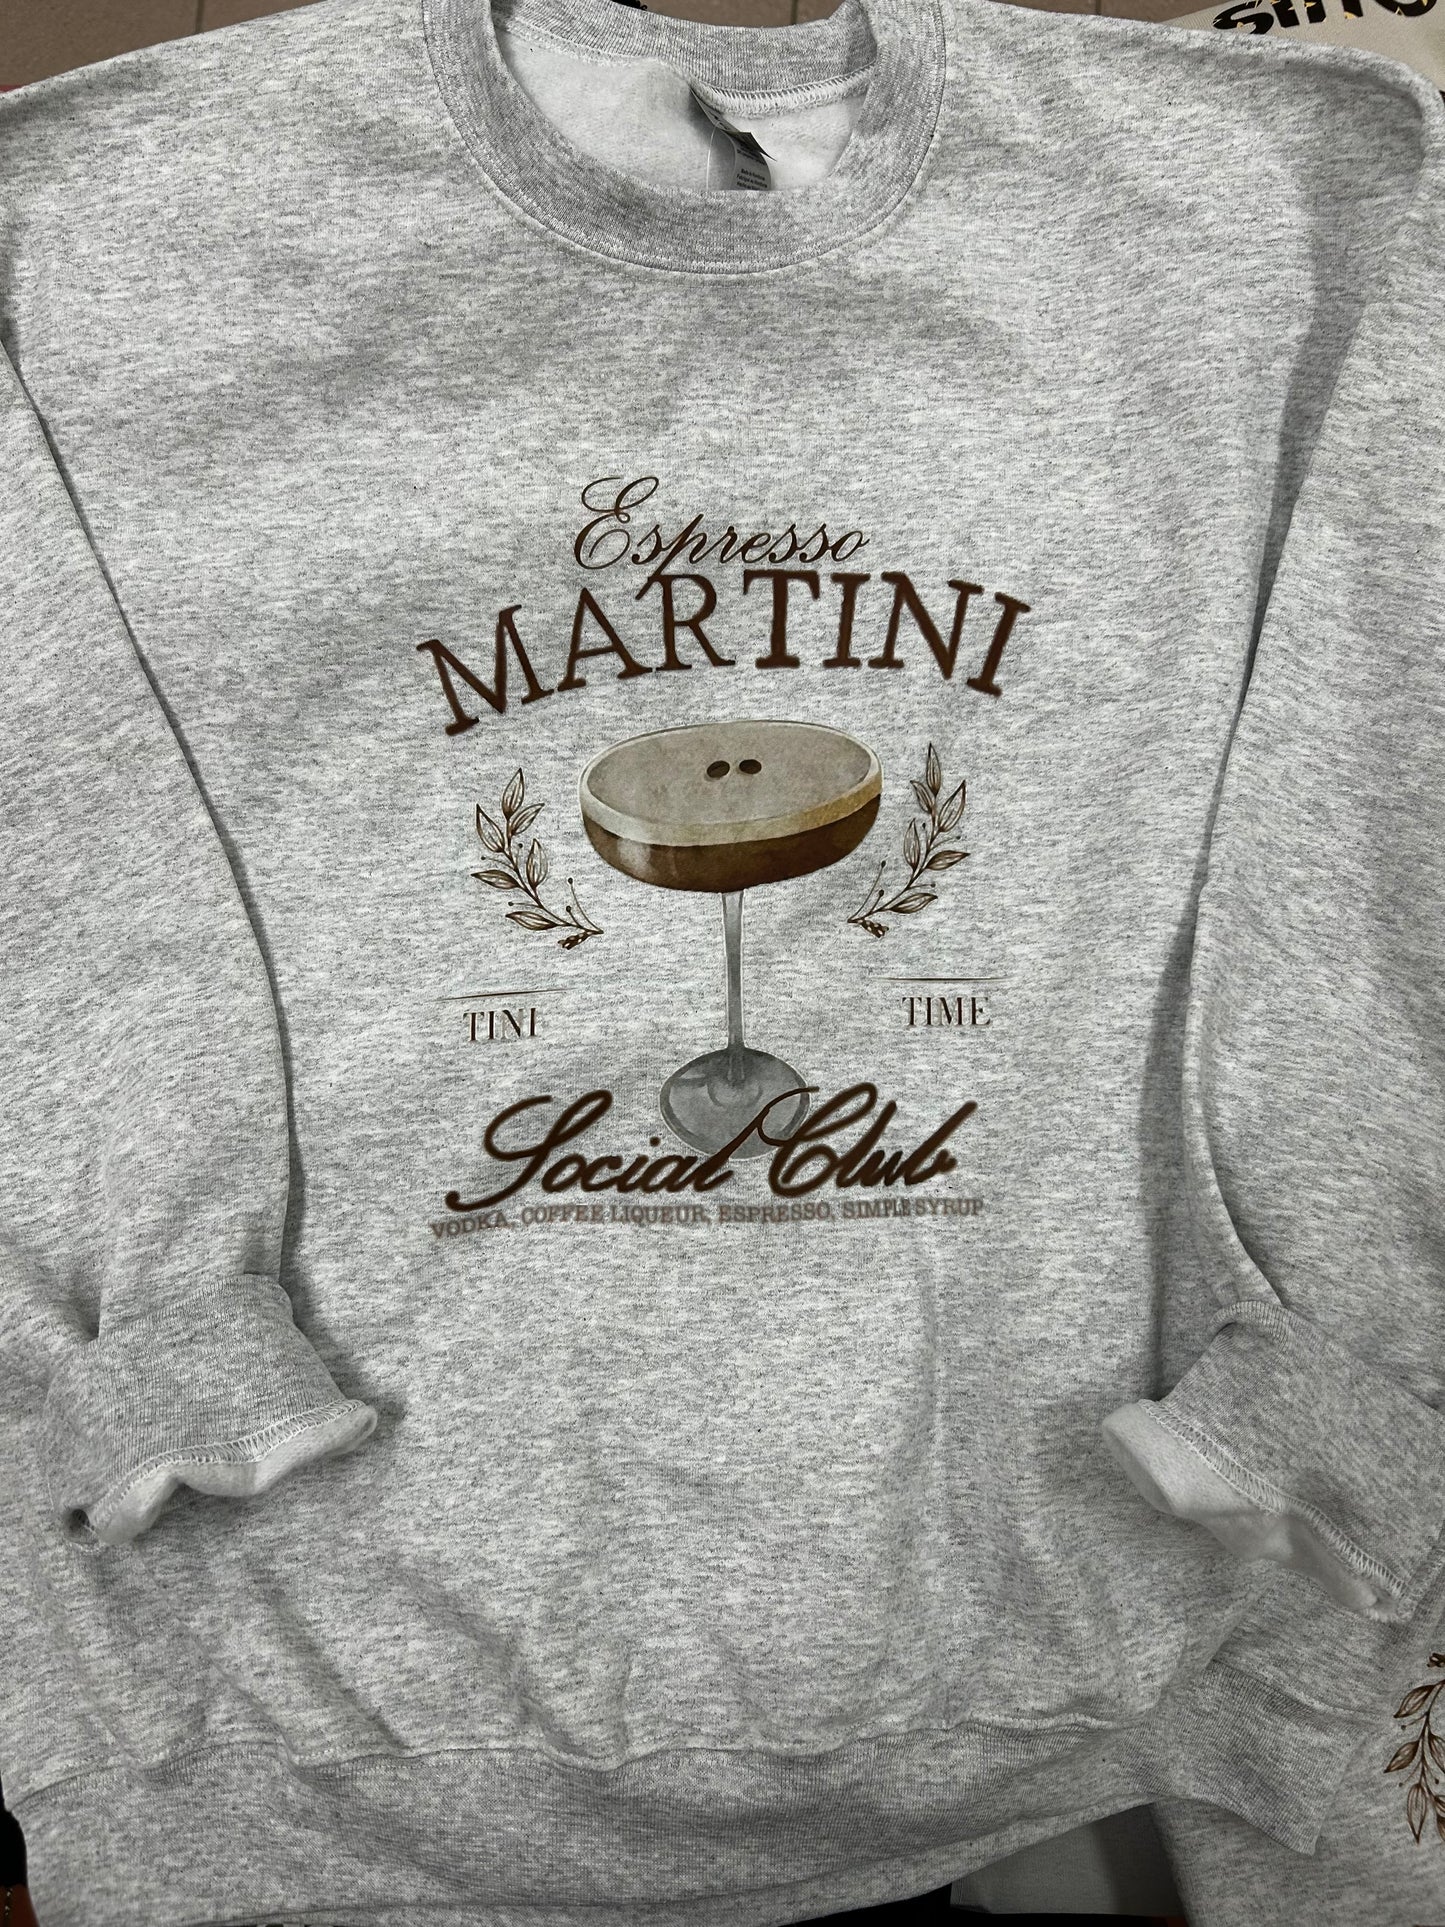 Espresso Martini Club